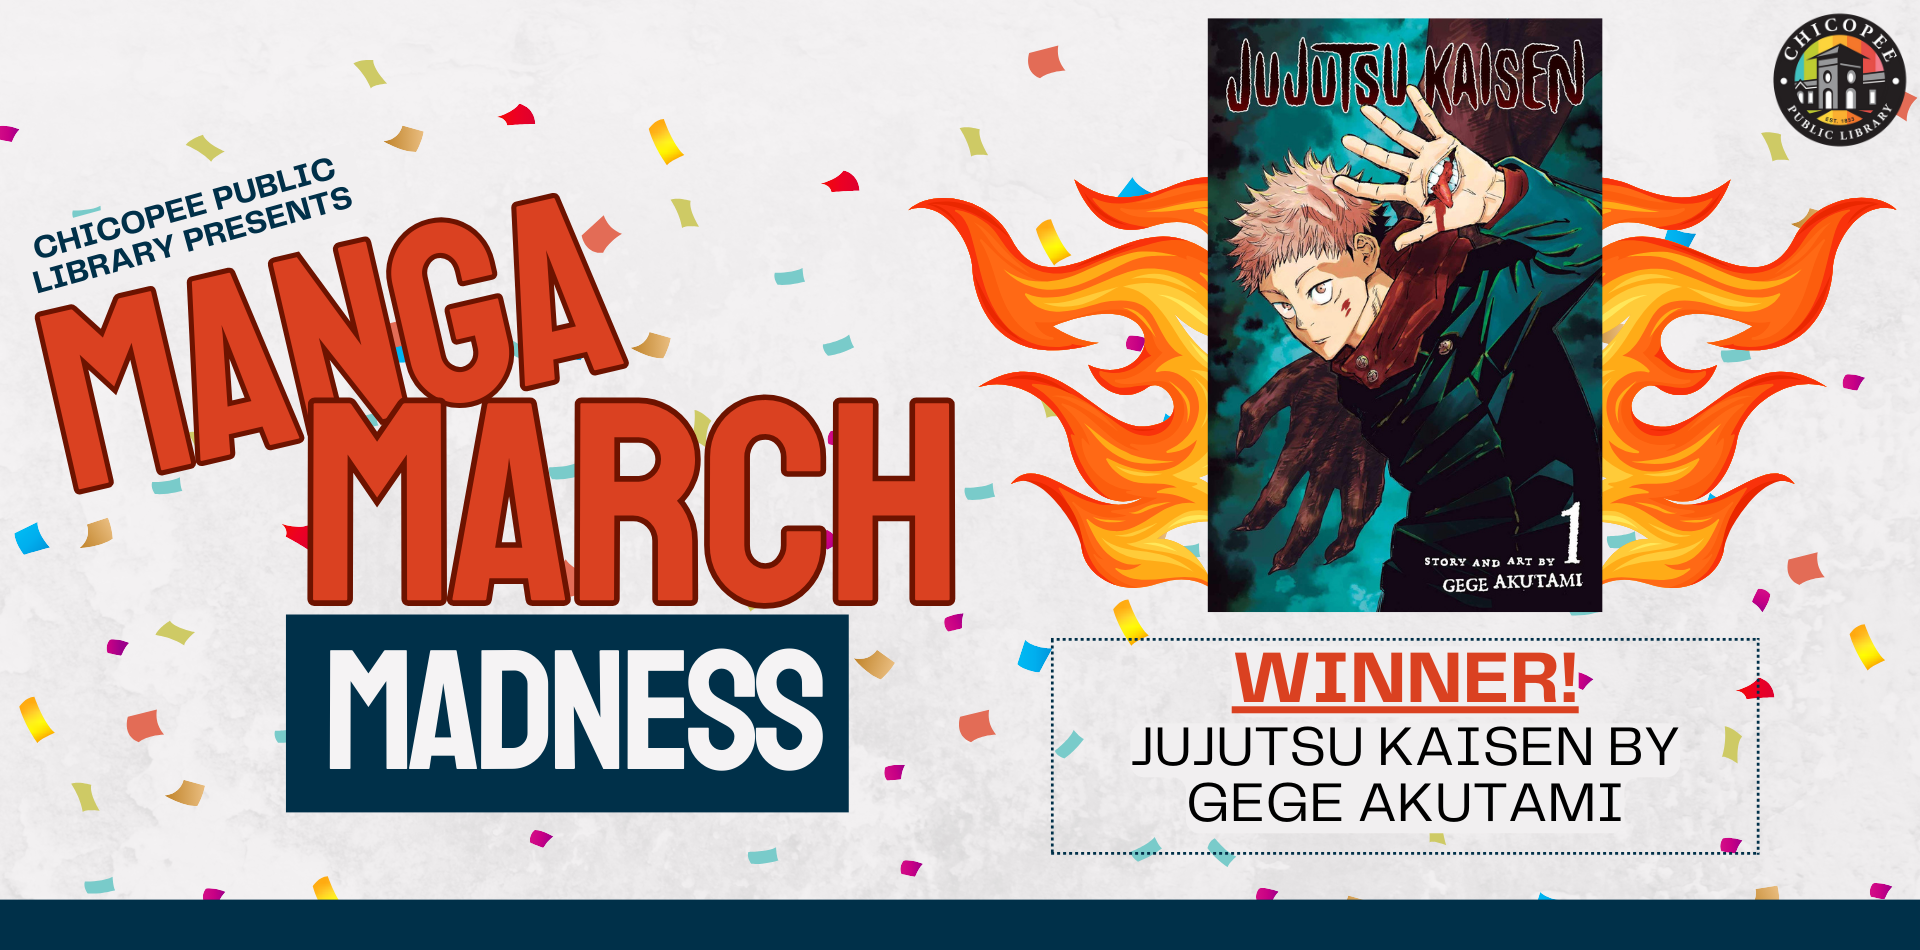 Manga March Madness Winner: Jujutsu Kaisen by Gege Akutami